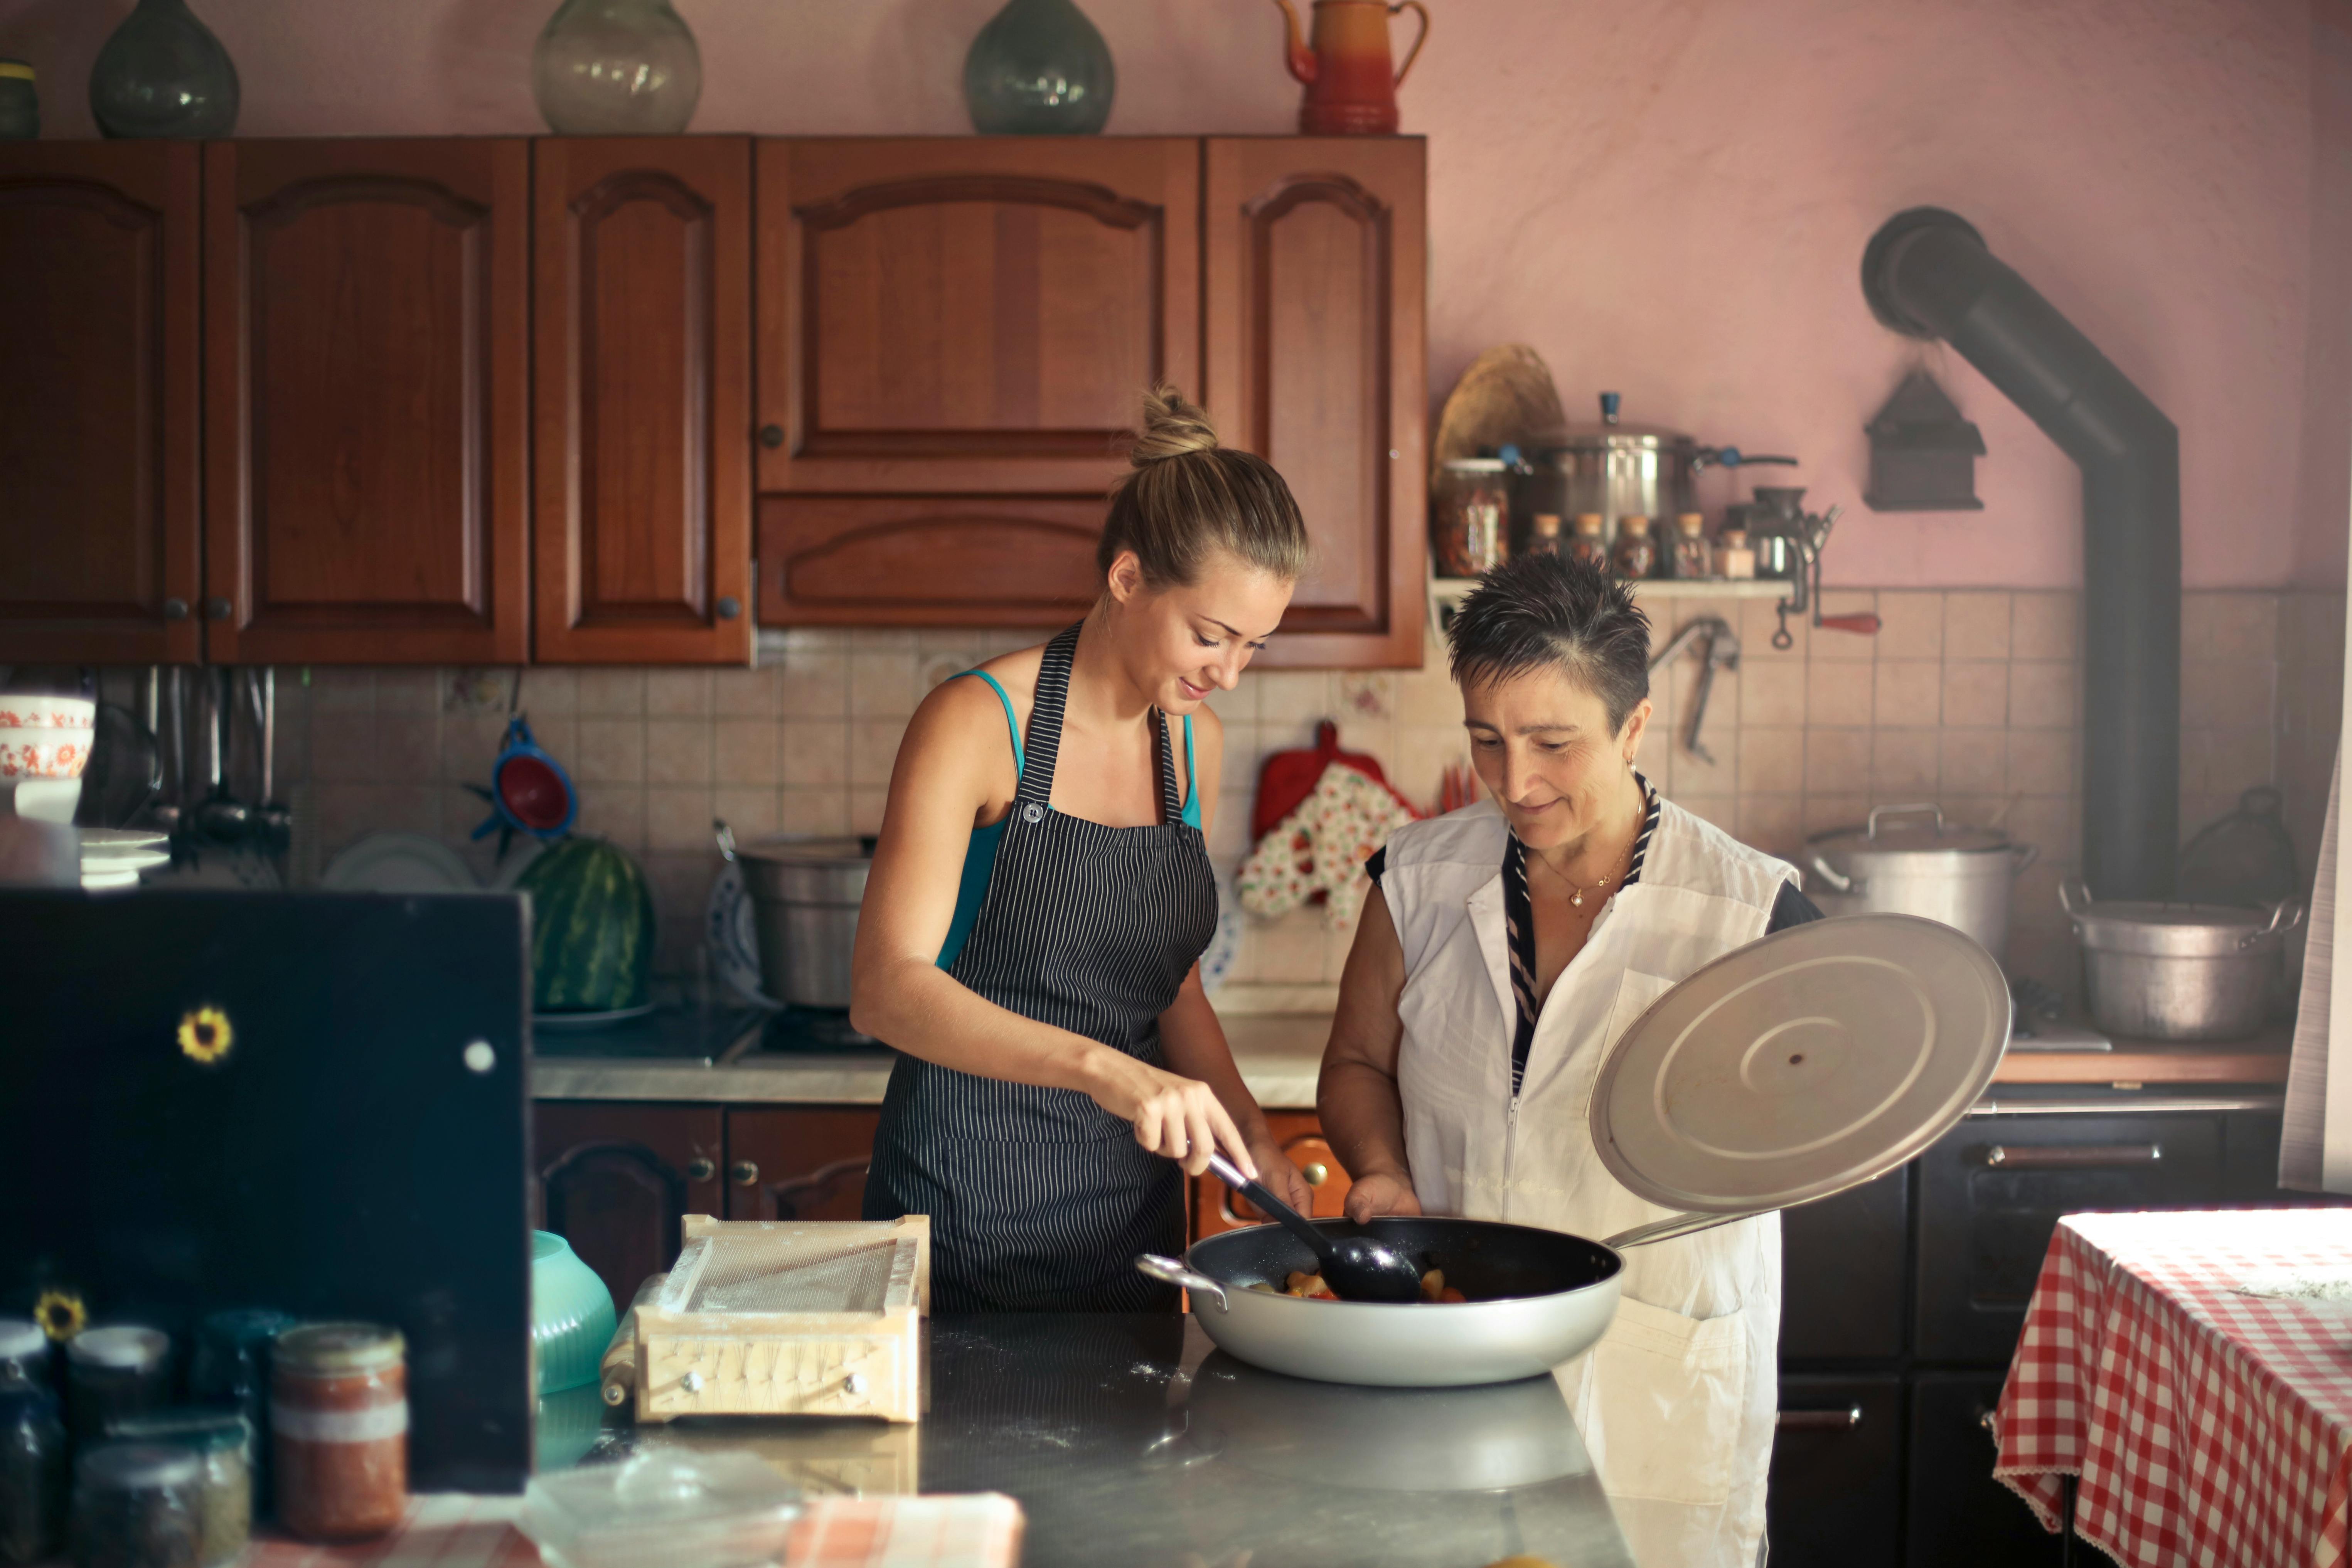 Una mujer joven feliz y otra mayor trabajando en la cocina | Fuente: Pexels